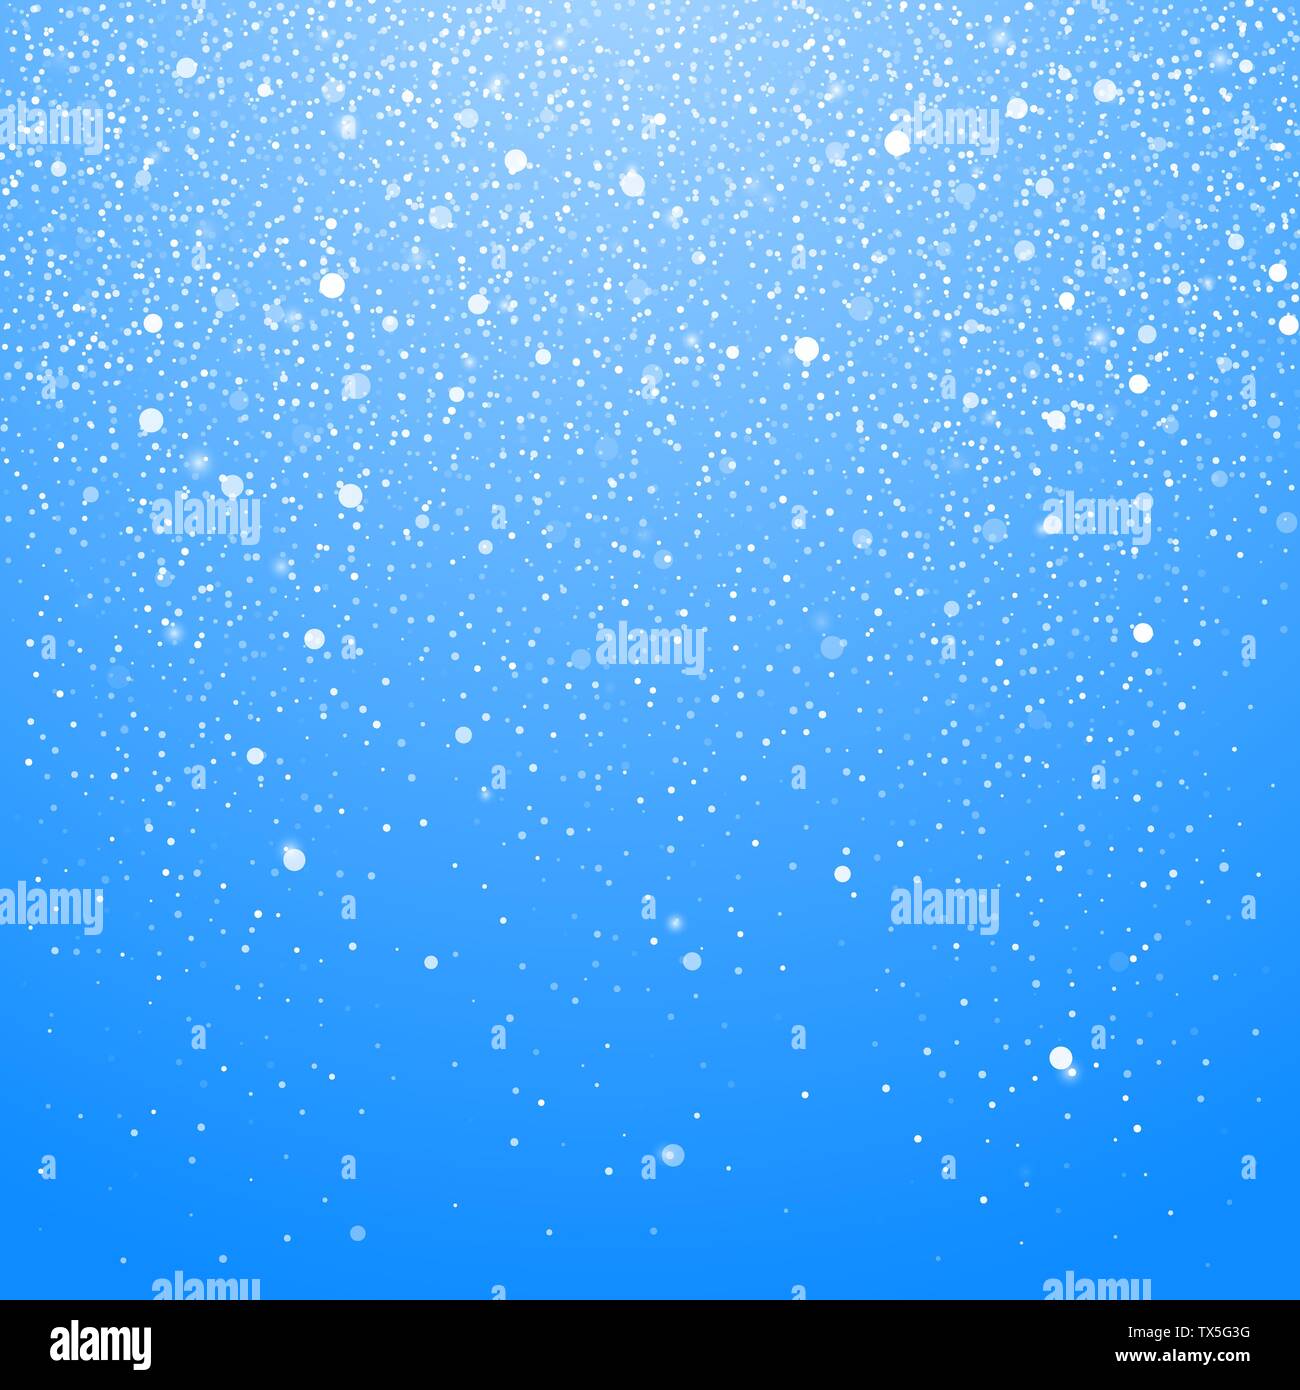 Schneefall isoliert auf blauem Hintergrund. Winter Weihnachten Hintergrund mit blauer Himmel. Fallende Weihnachten Glänzende schönen Schnee. Vector Illustration Stock Vektor